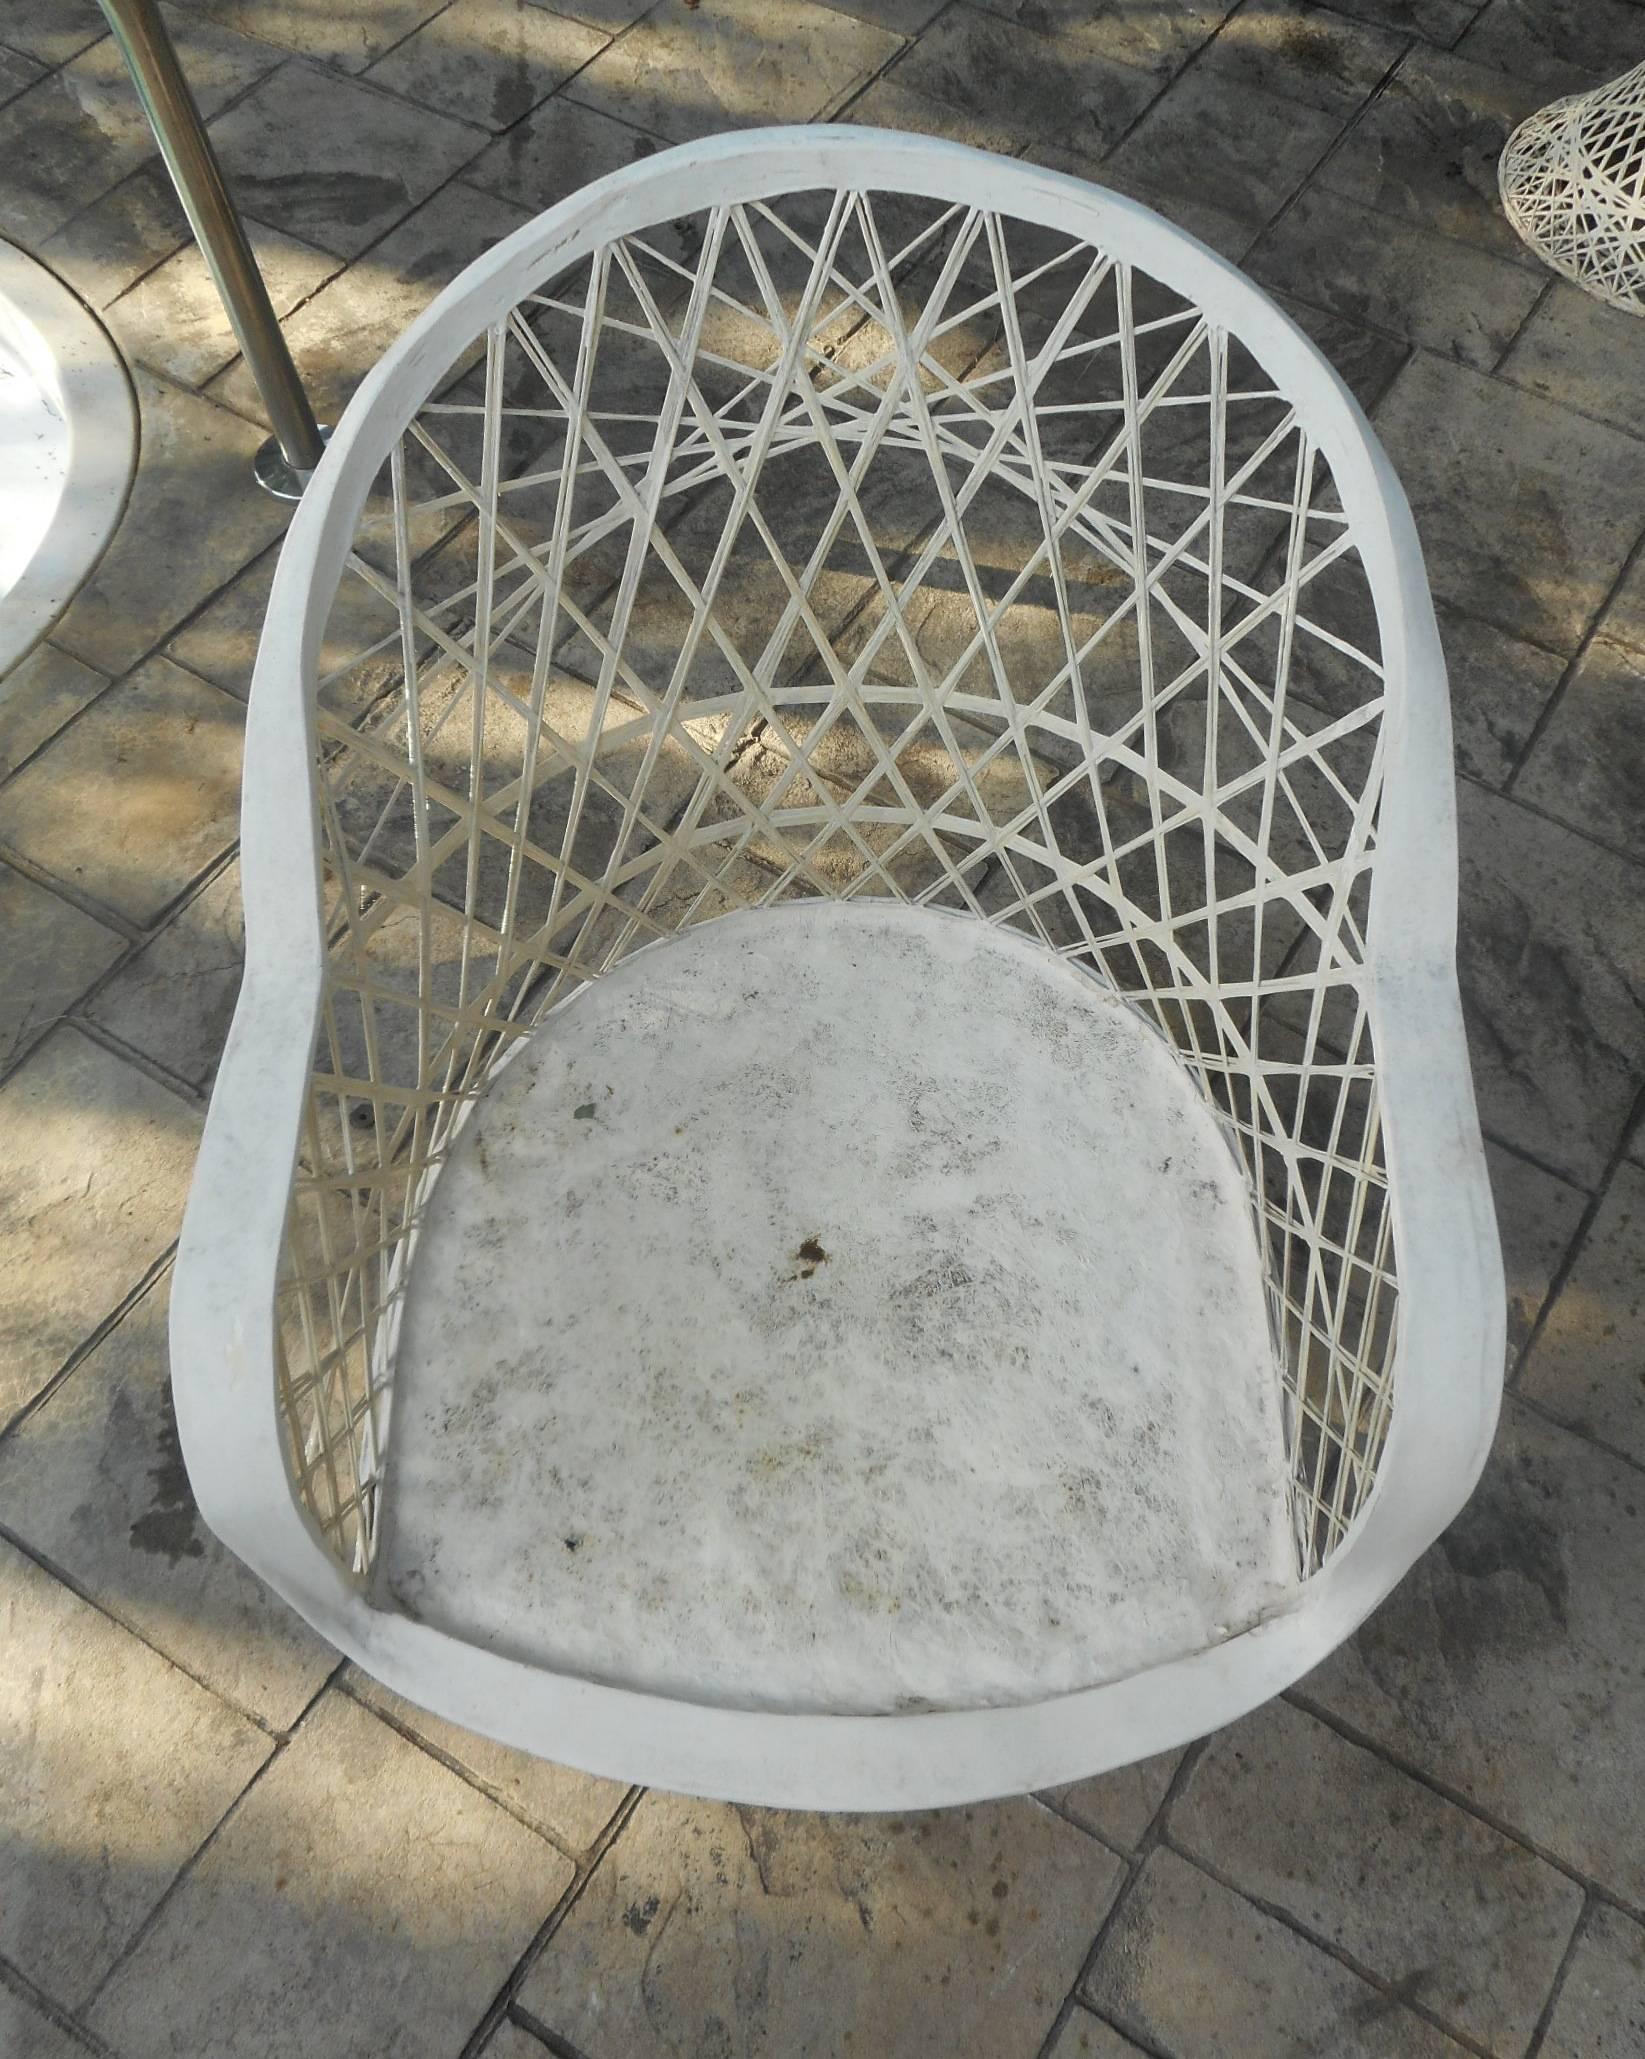 spun fiberglass outdoor furniture